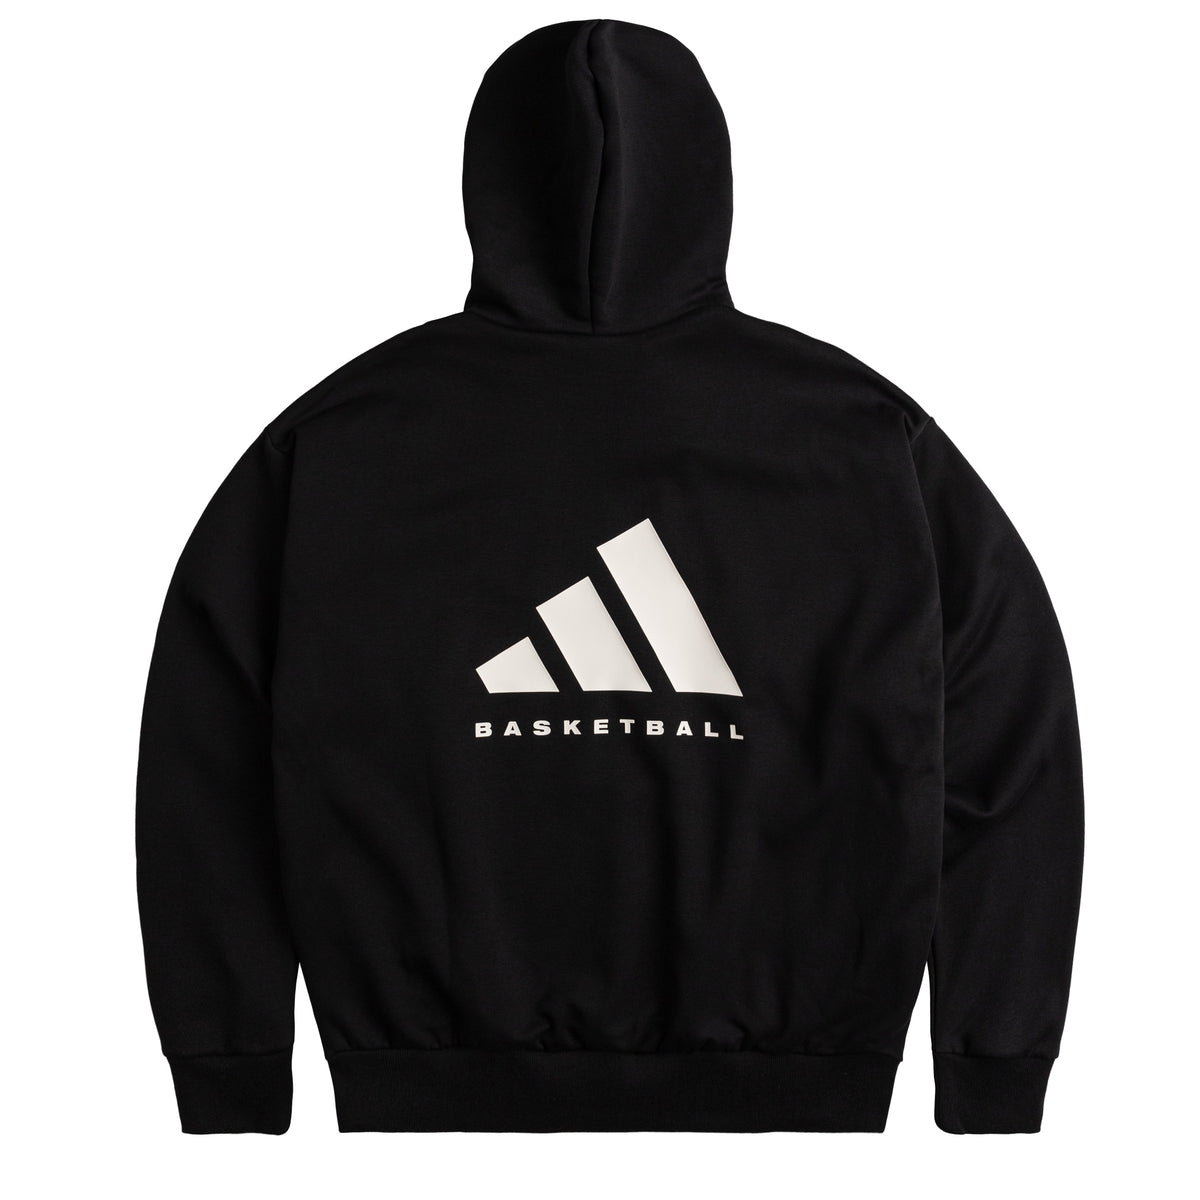 Adidas Basketball Fleece Hoodie » Buy online now!